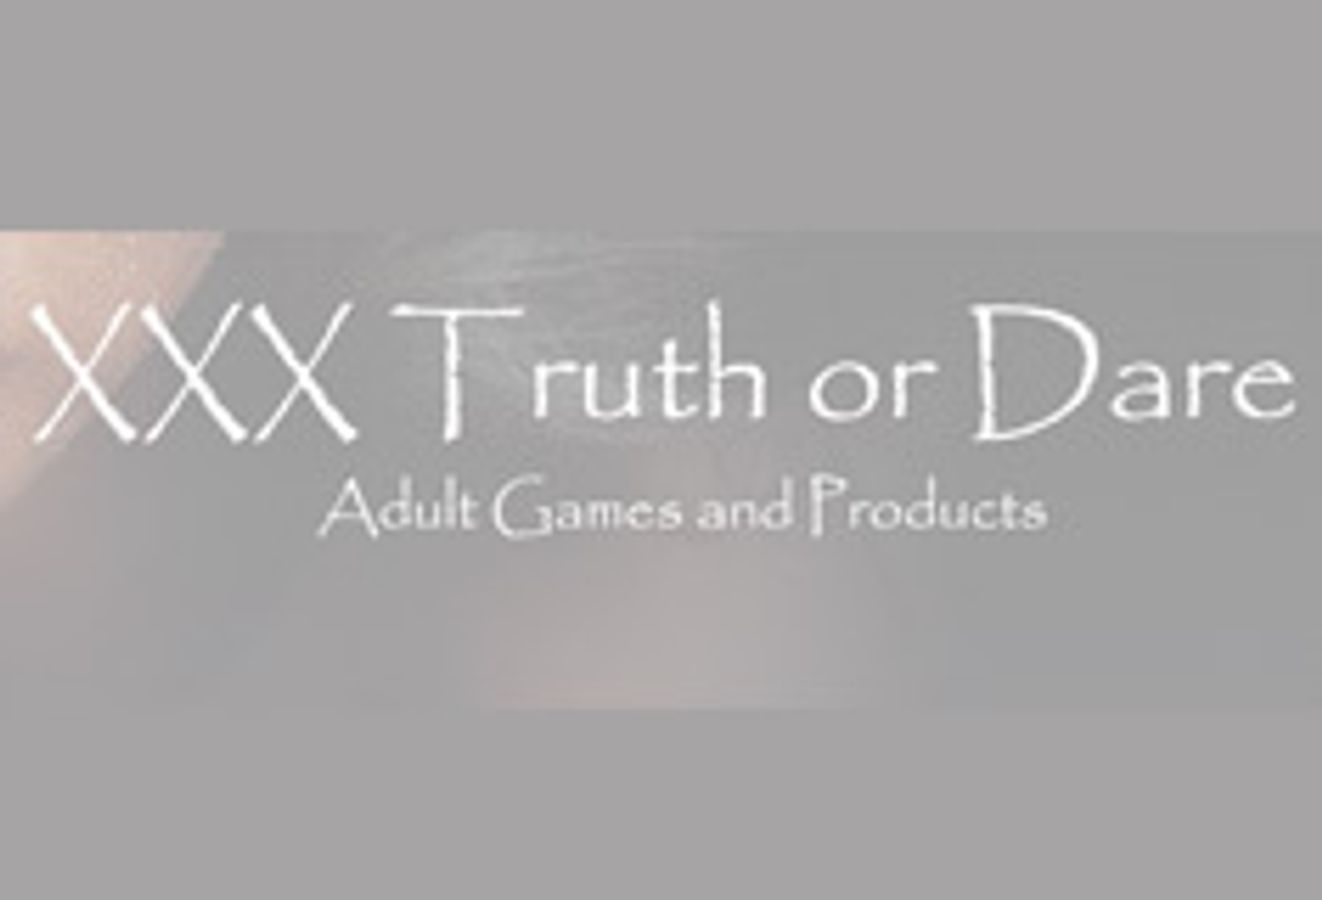 XXX Truth Or Dare